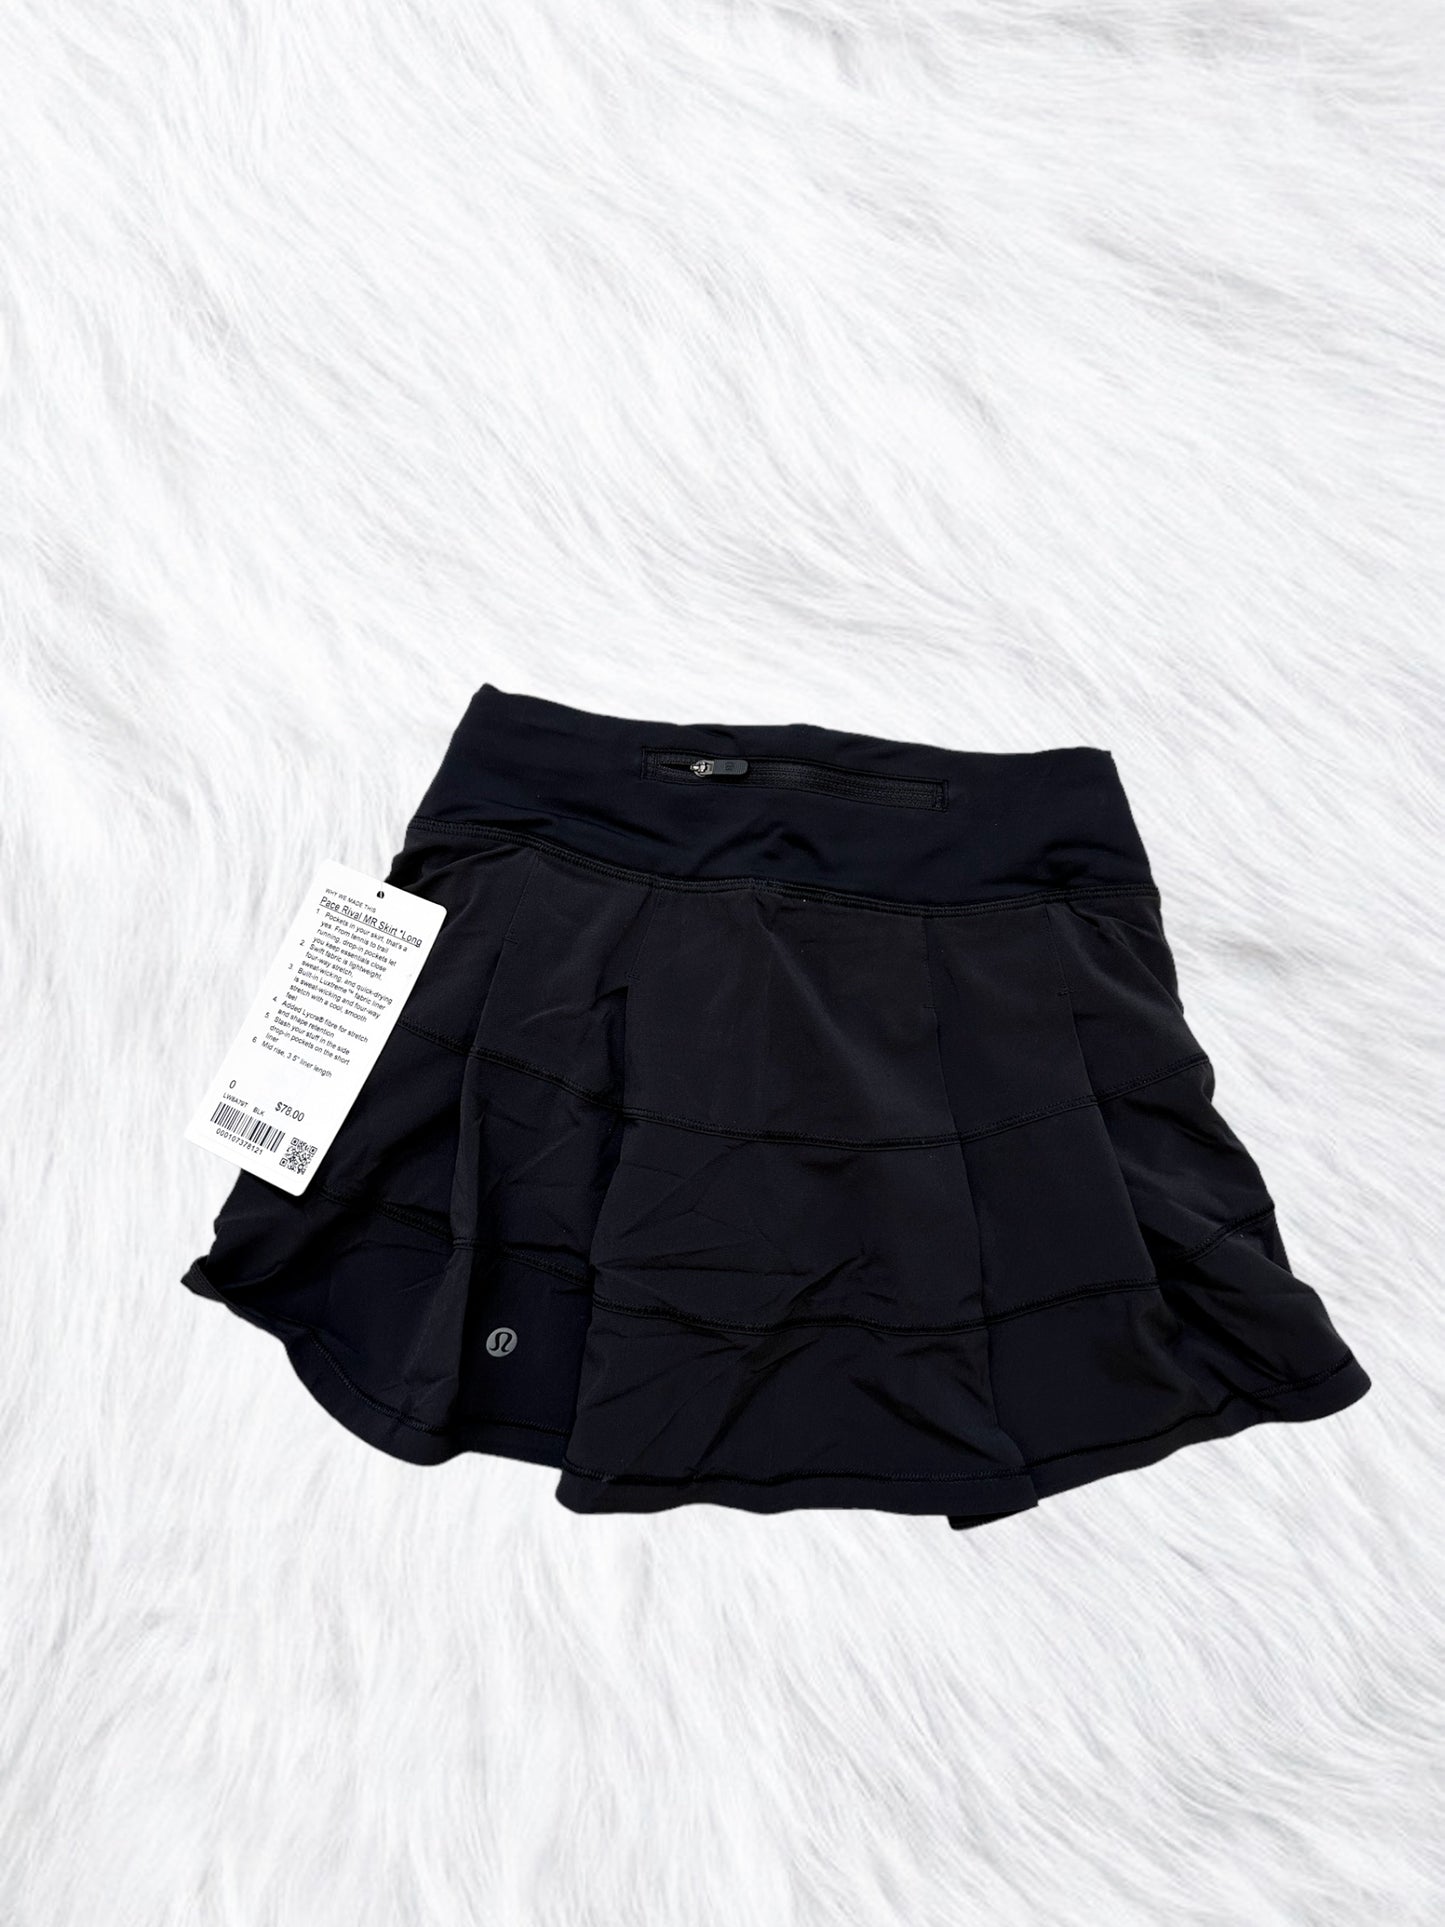 Pace Rival Skirt Long Black